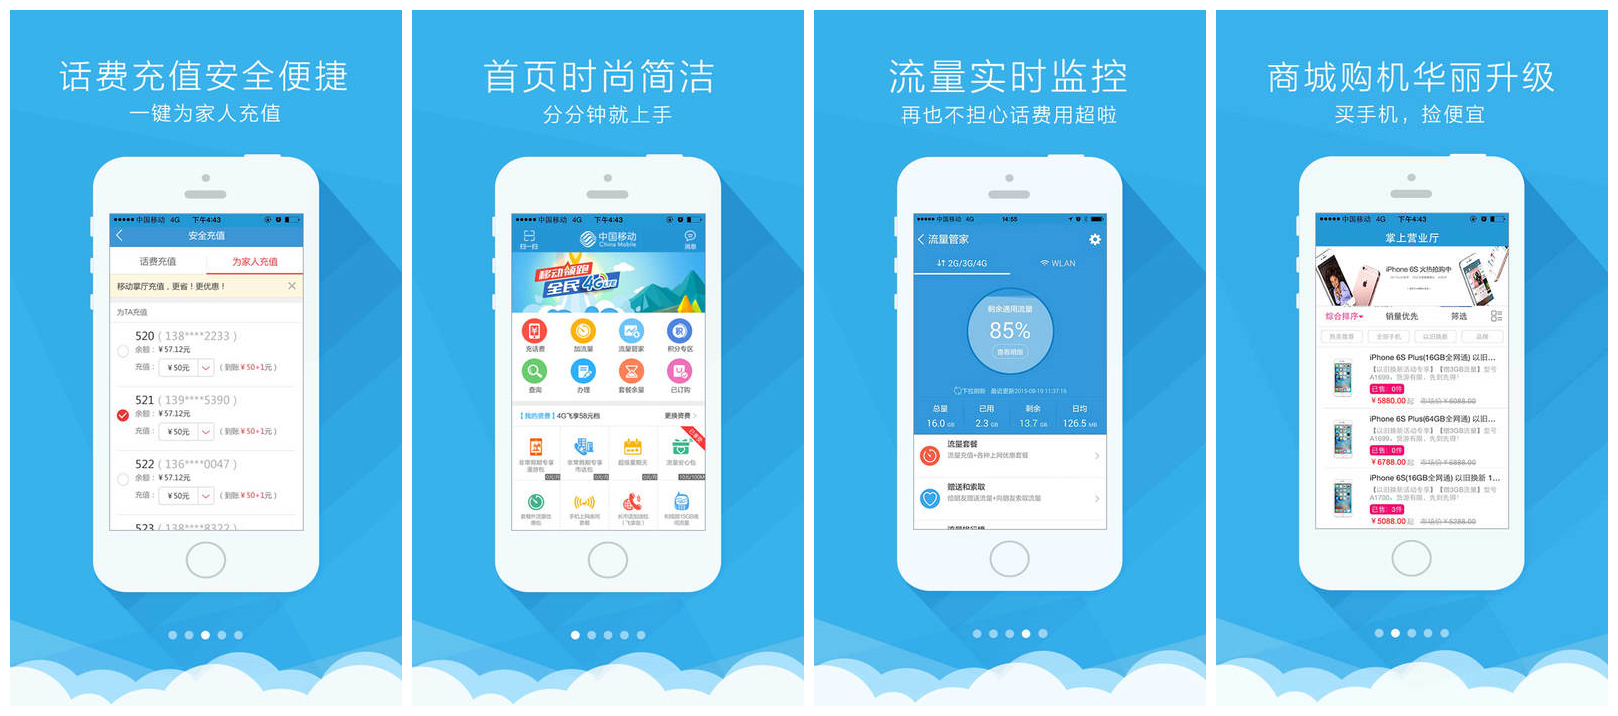 重庆移动手机营业厅app下载